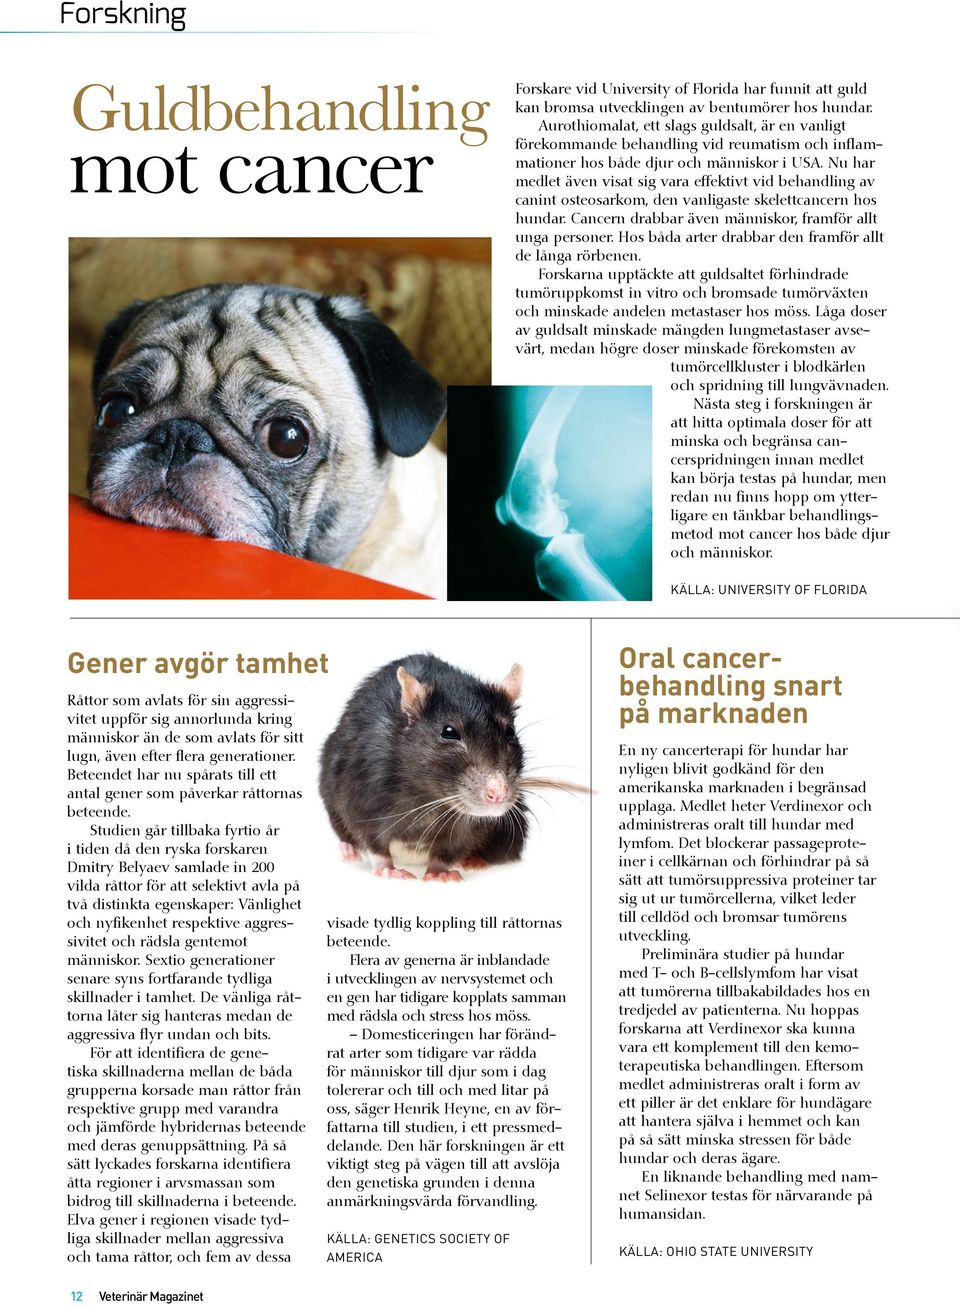 Nu har medlet även visat sig vara effektivt vid behandling av canint osteosarkom, den vanligaste skelettcancern hos hundar. Cancern drabbar även människor, framför allt unga personer.